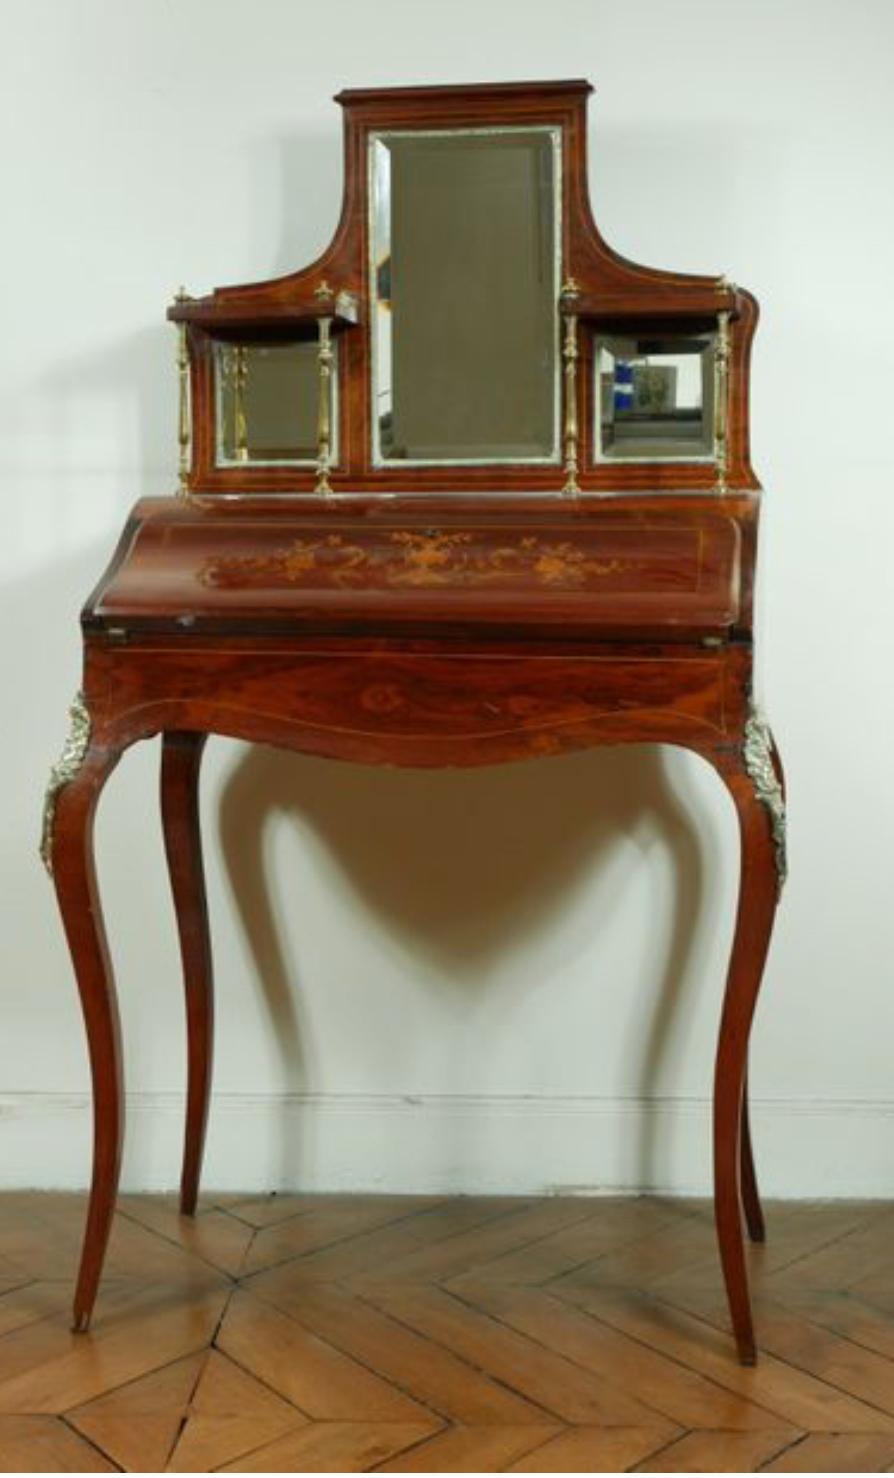 Dies ist eine schöne antike Mahagoni Intarsien Bonheur Du Jour, oder Damen Schreibtisch, ca. 1890 in Datum. Die Klappe lässt sich öffnen und gibt den Blick auf eine lederne Schreibfläche und drei Schubladen frei. Auf der Oberseite befinden sich drei